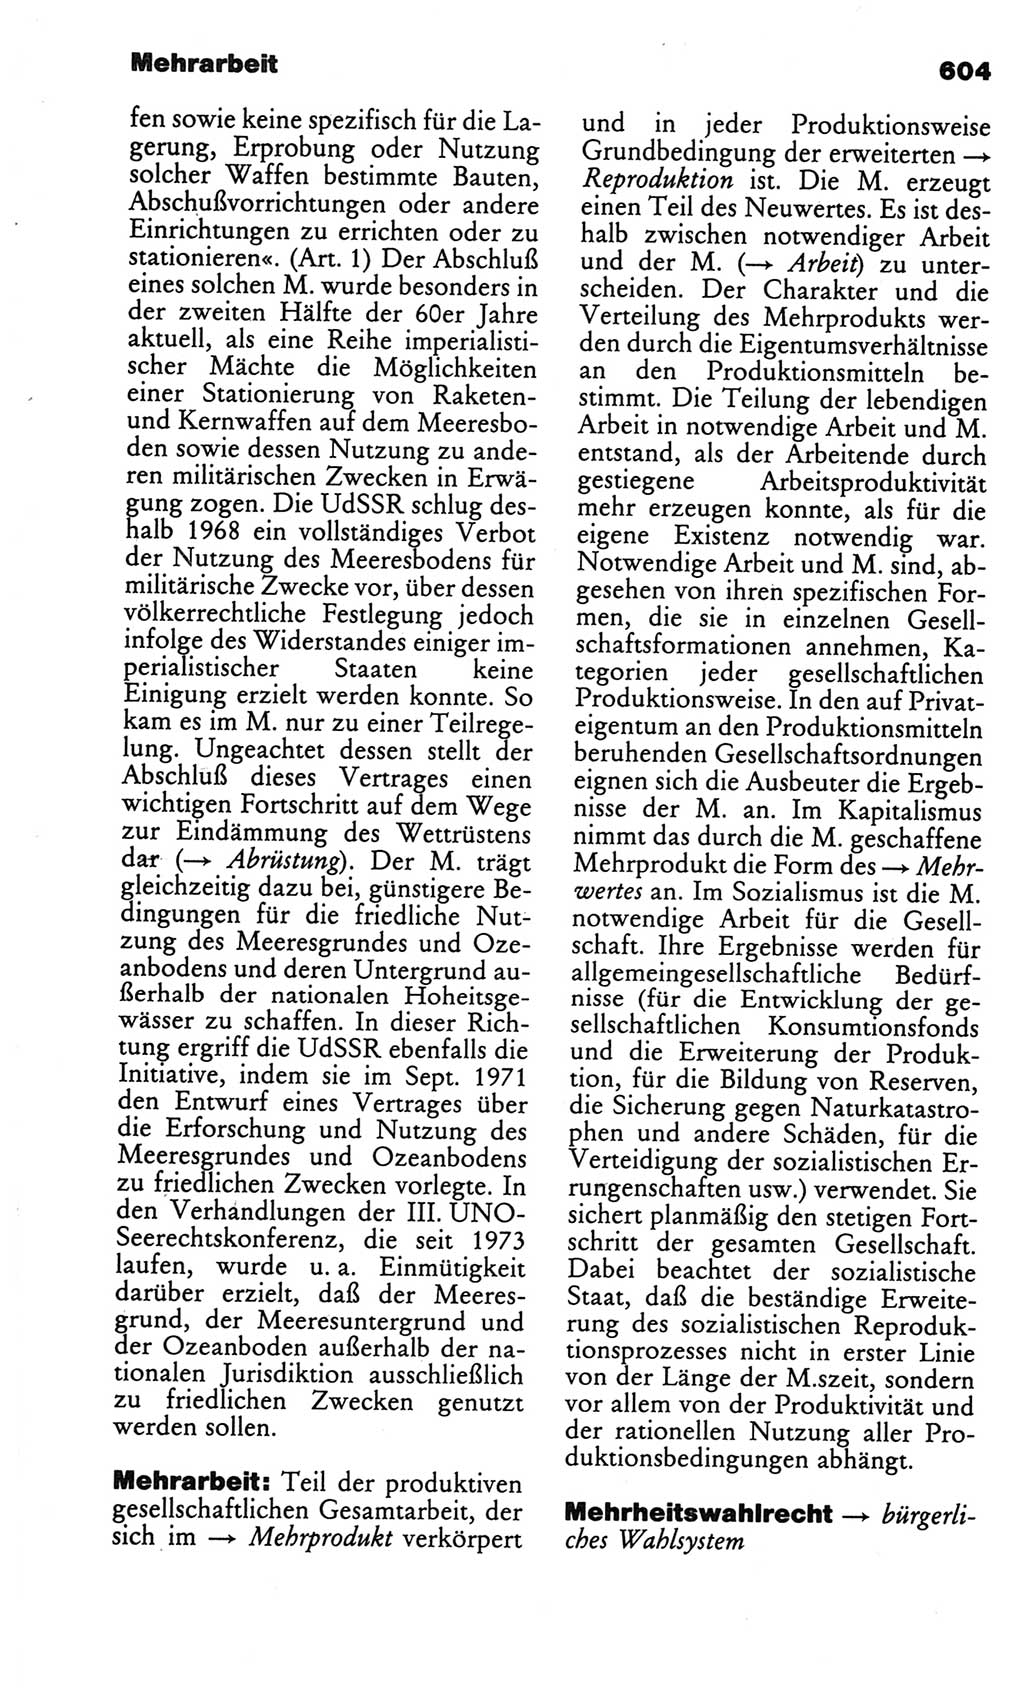 Kleines politisches Wörterbuch [Deutsche Demokratische Republik (DDR)] 1986, Seite 604 (Kl. pol. Wb. DDR 1986, S. 604)